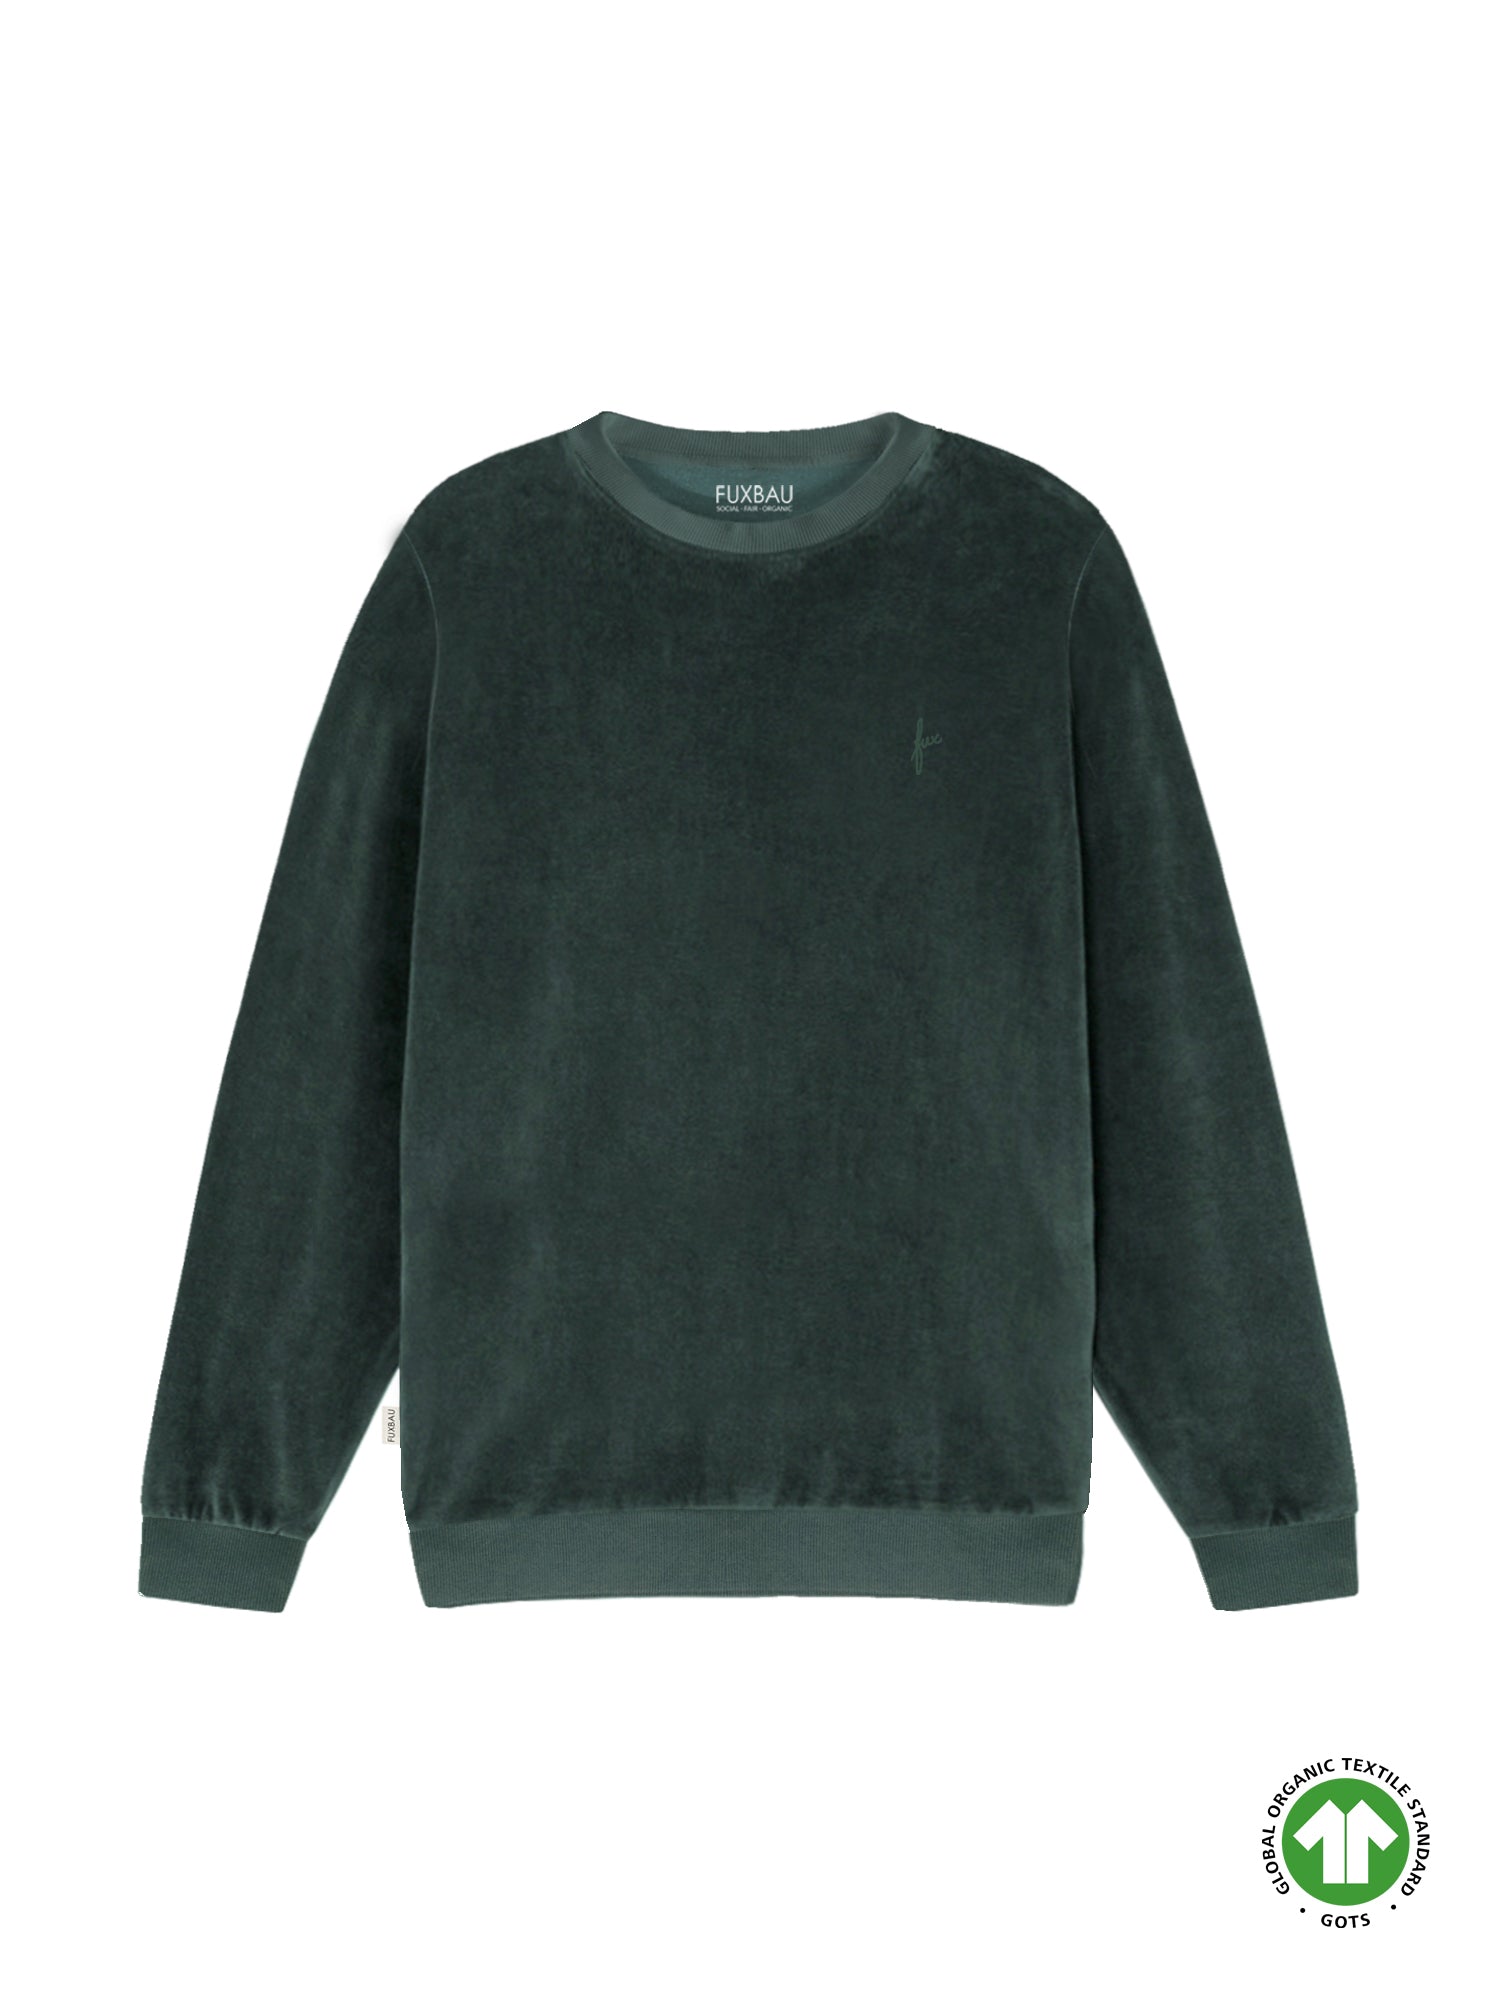 Fair Fashion FUXBAU Männer Samt Sweater in grün aus 100% GOTS zertifizierter Biobaumwolle made in Portugal.